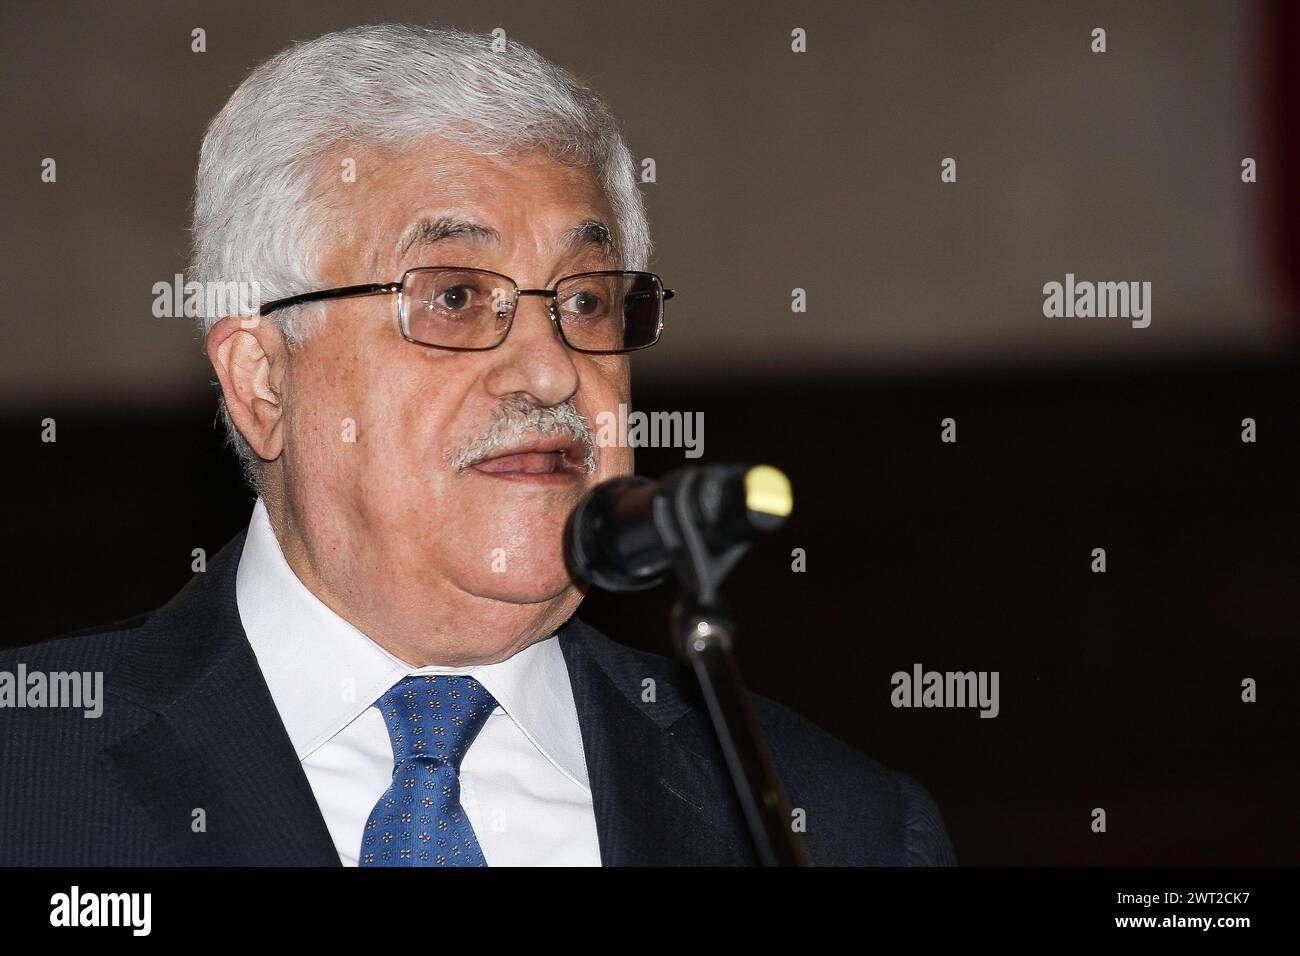 Le président palestinien Abu Mazen lors d'une conférence de presse à Naples Banque D'Images